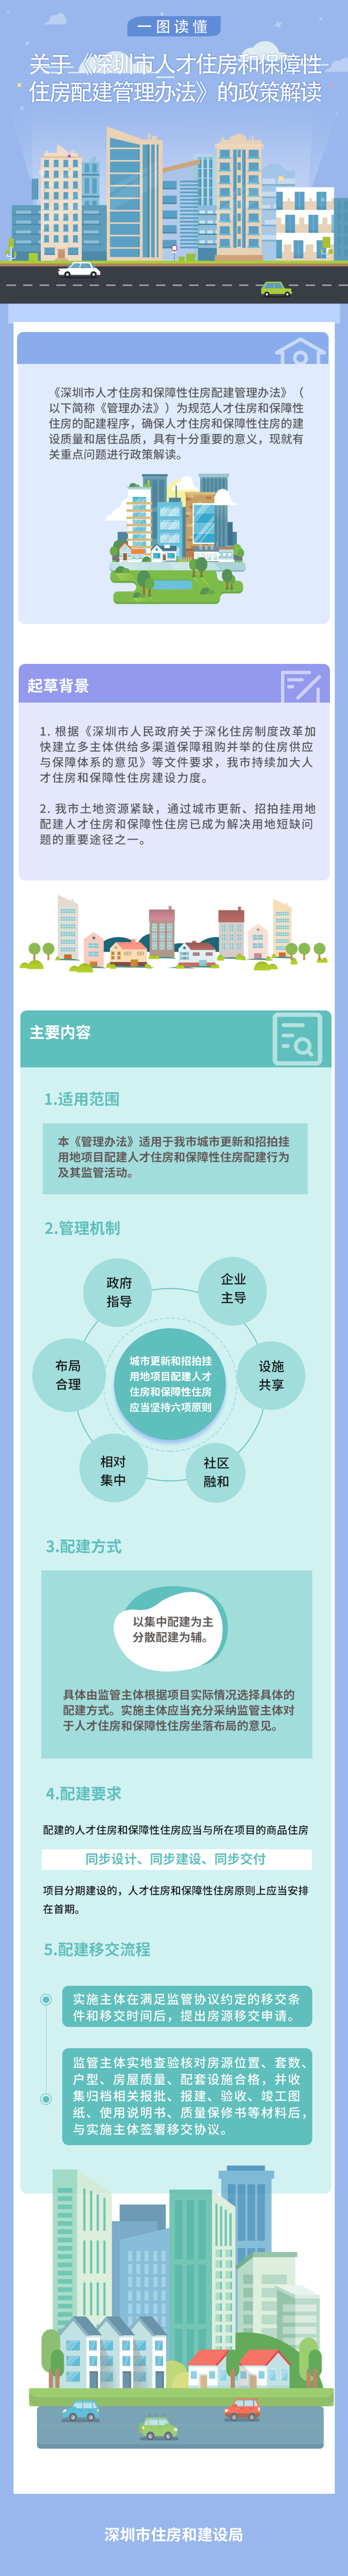 （图解）《深圳市人才住房和保障性住房配建管理办法》政策解读.png